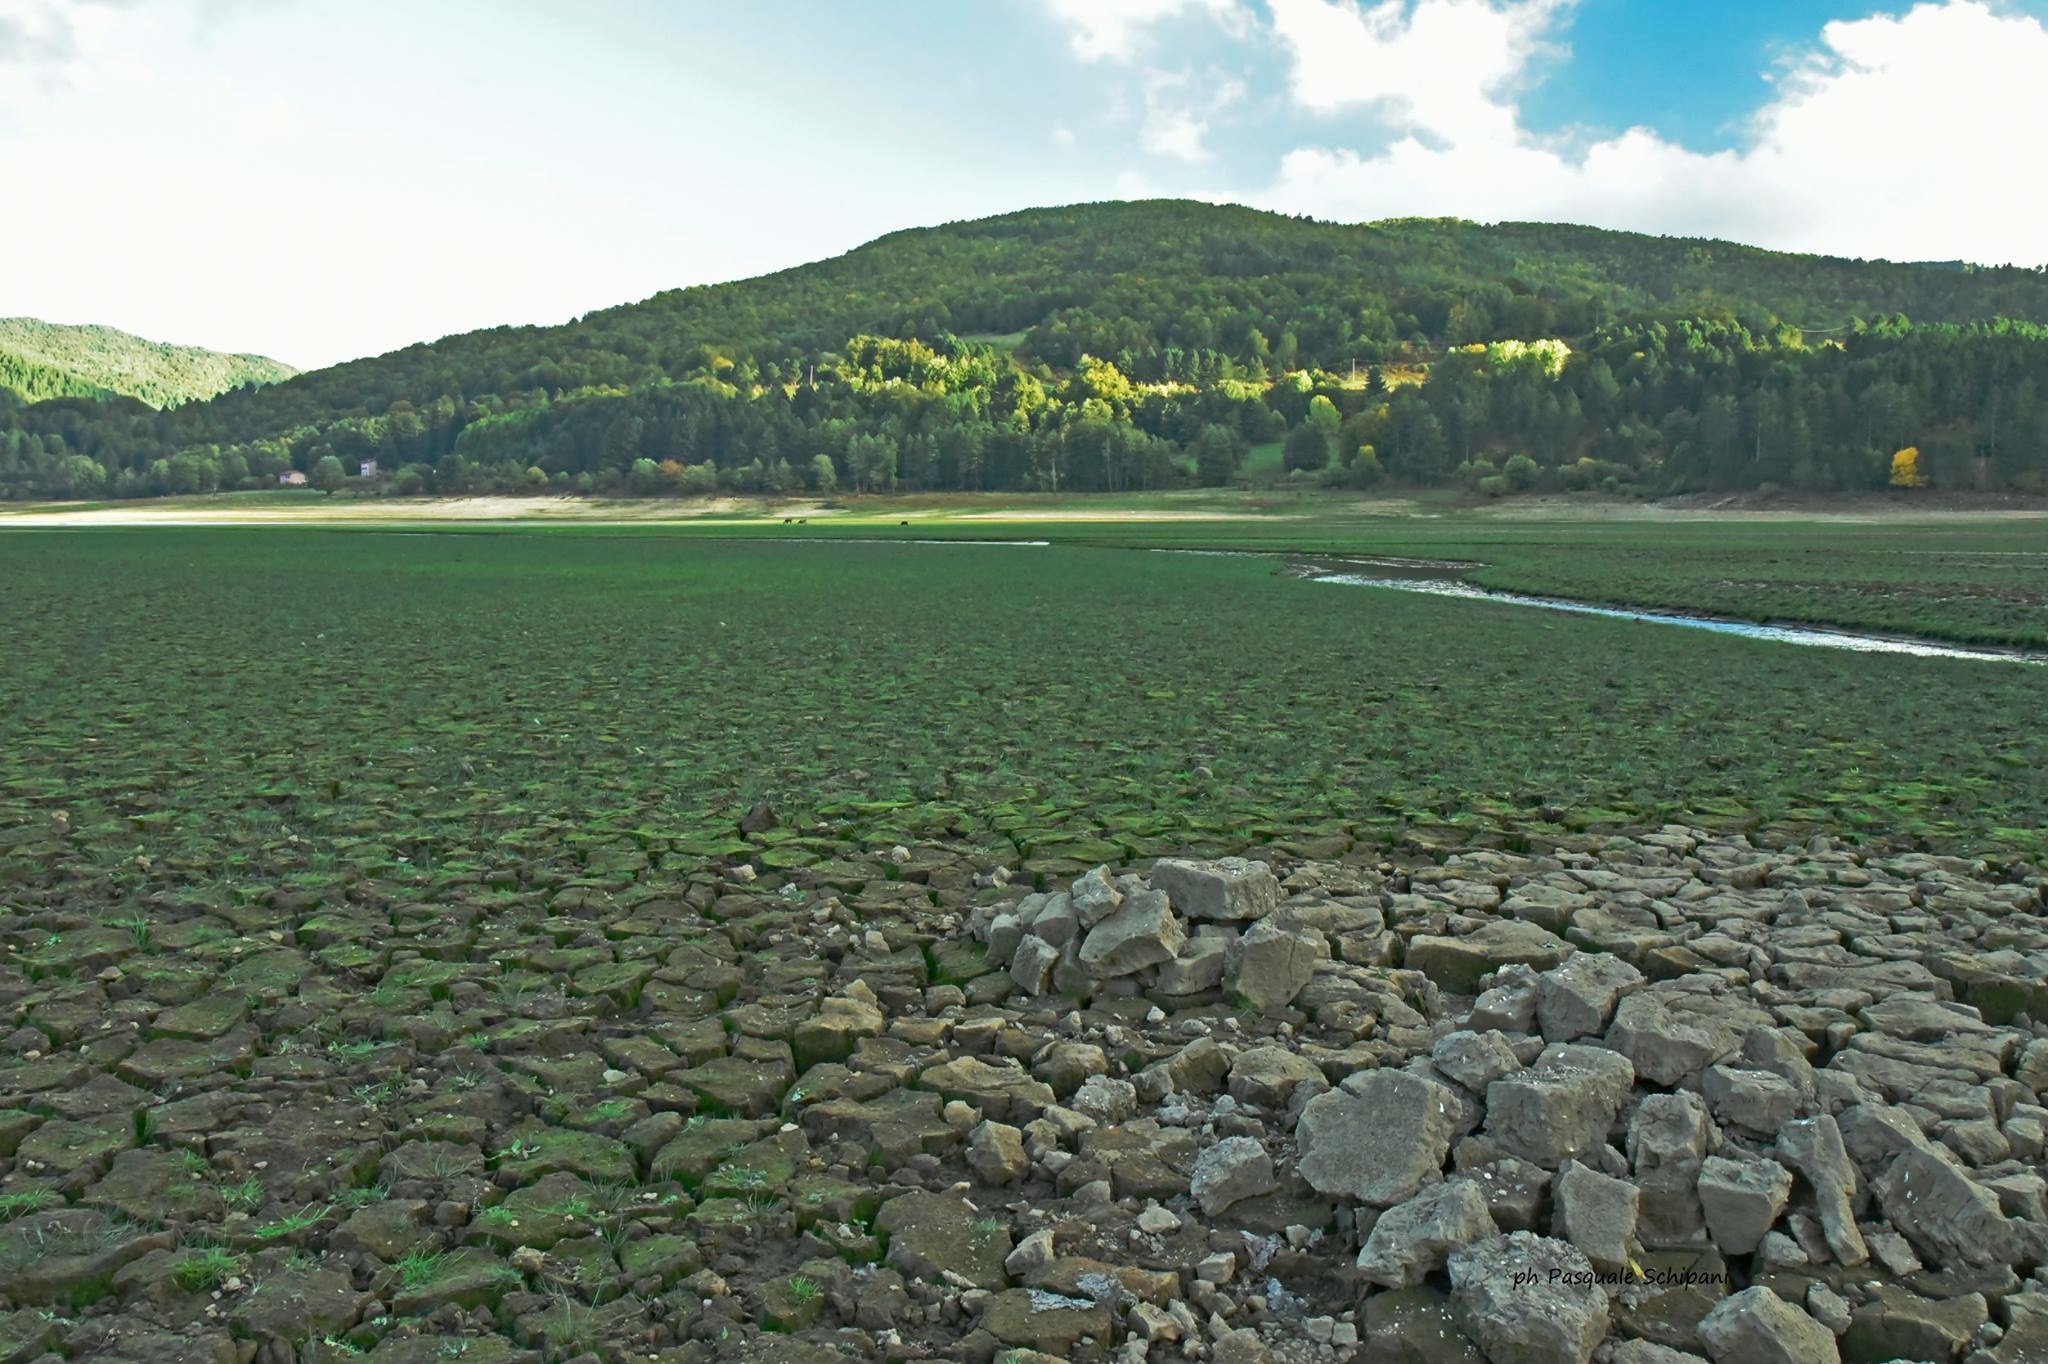 Situazione siccità a SETTEMBRE: piogge ancora insufficienti a risolvere il problema...